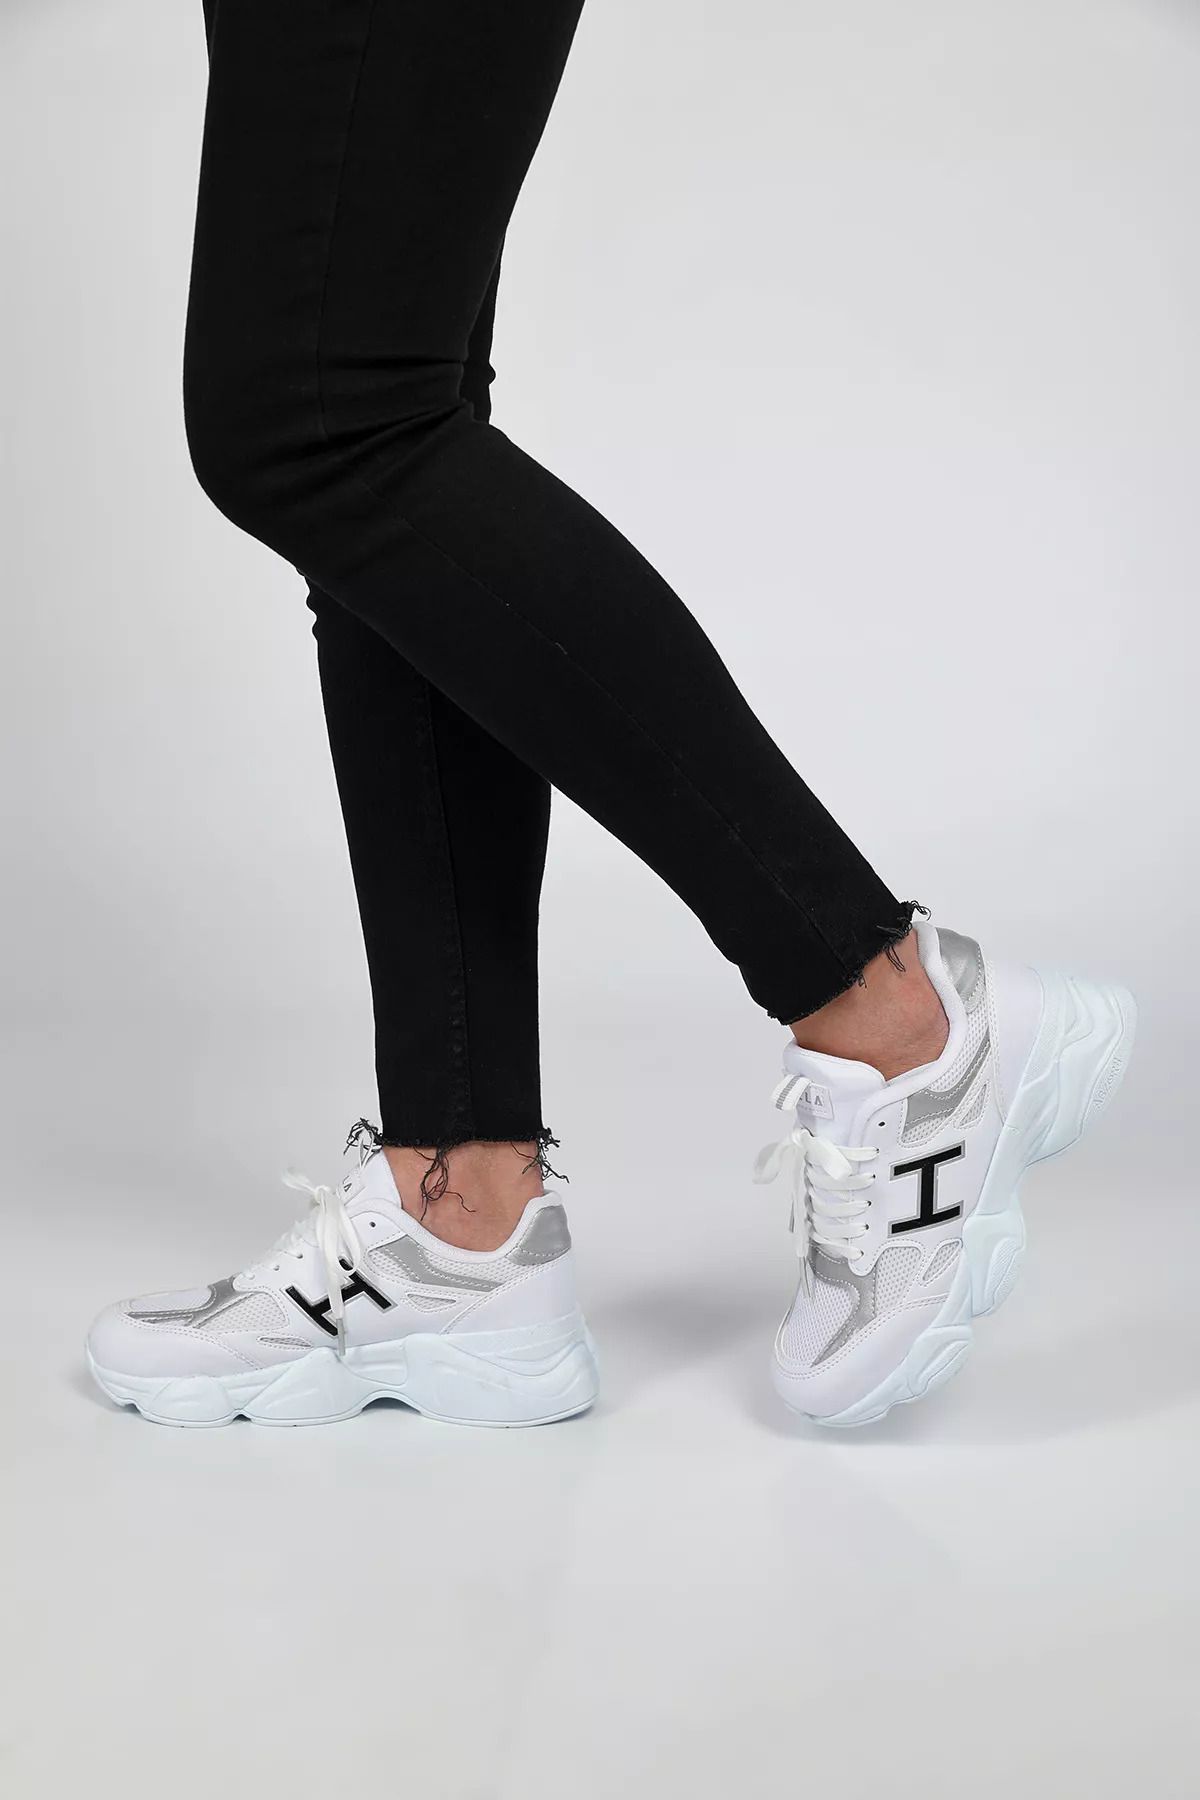 Julude Beyaz Bağcıklı Yüksek Taban Günlük Kadın Spor Ayakkabı